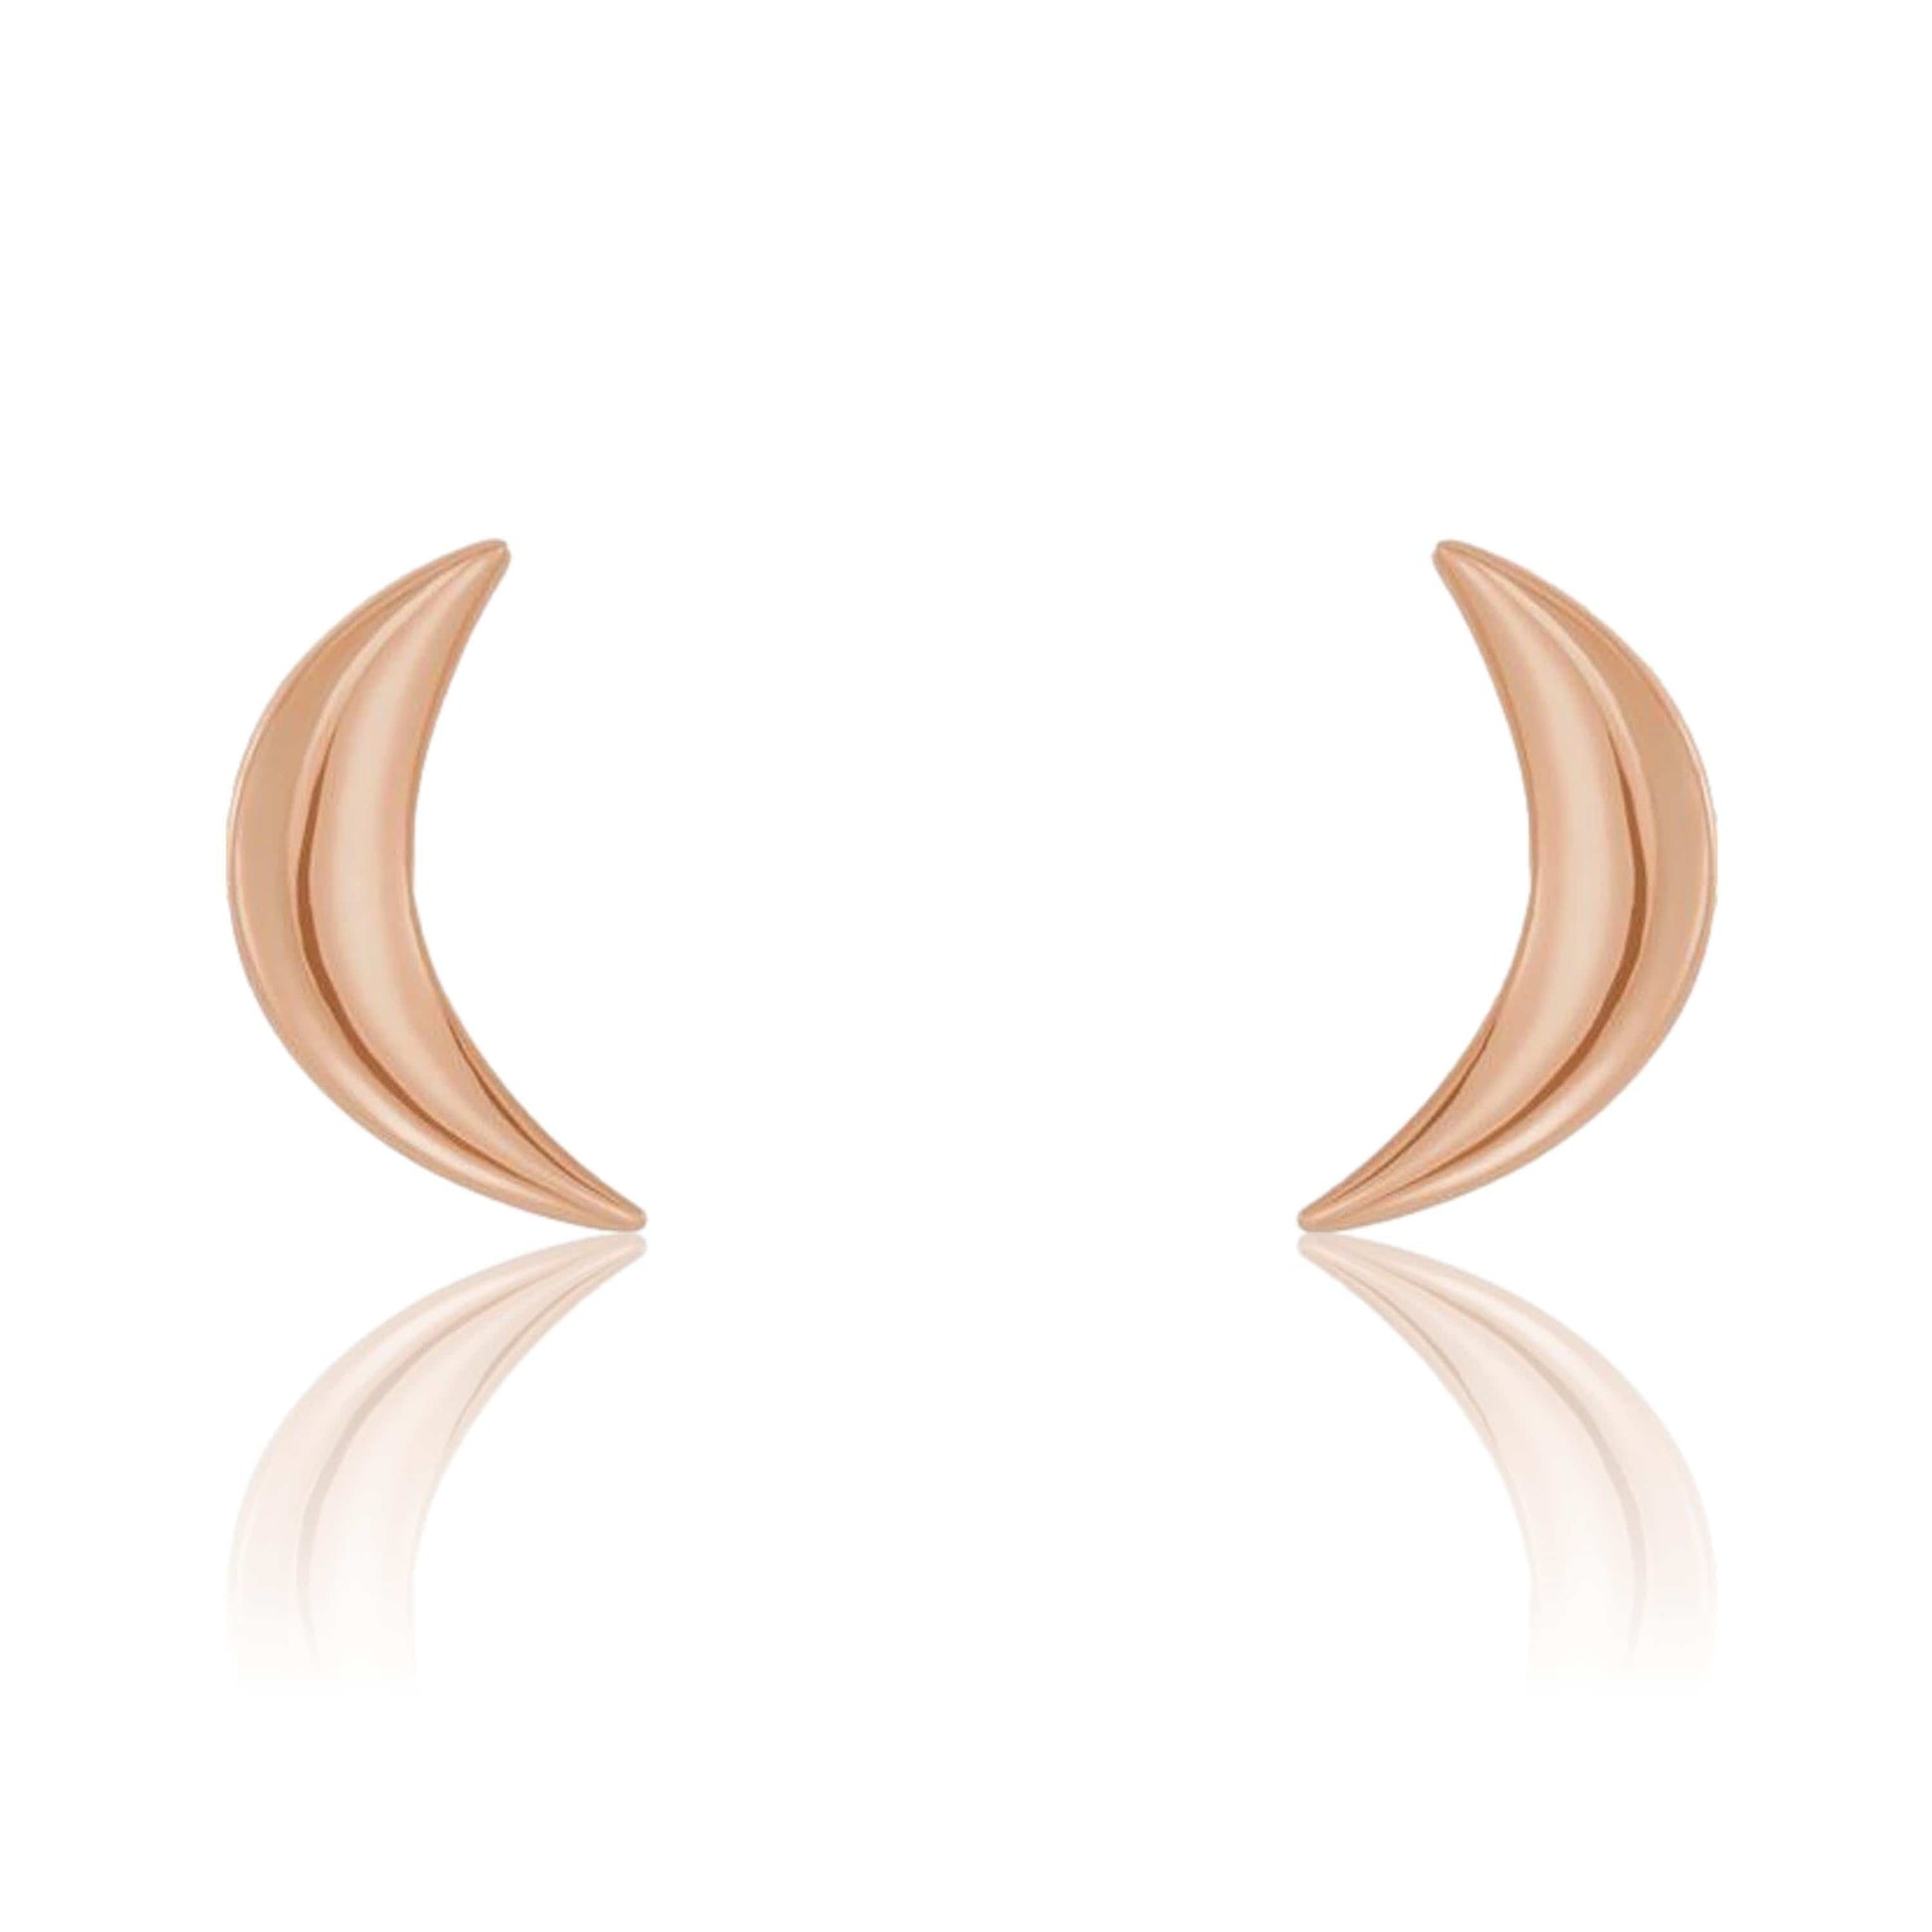 Crescent Moon Stud Earrings 14k Rose Gold Earrings by Nodeform